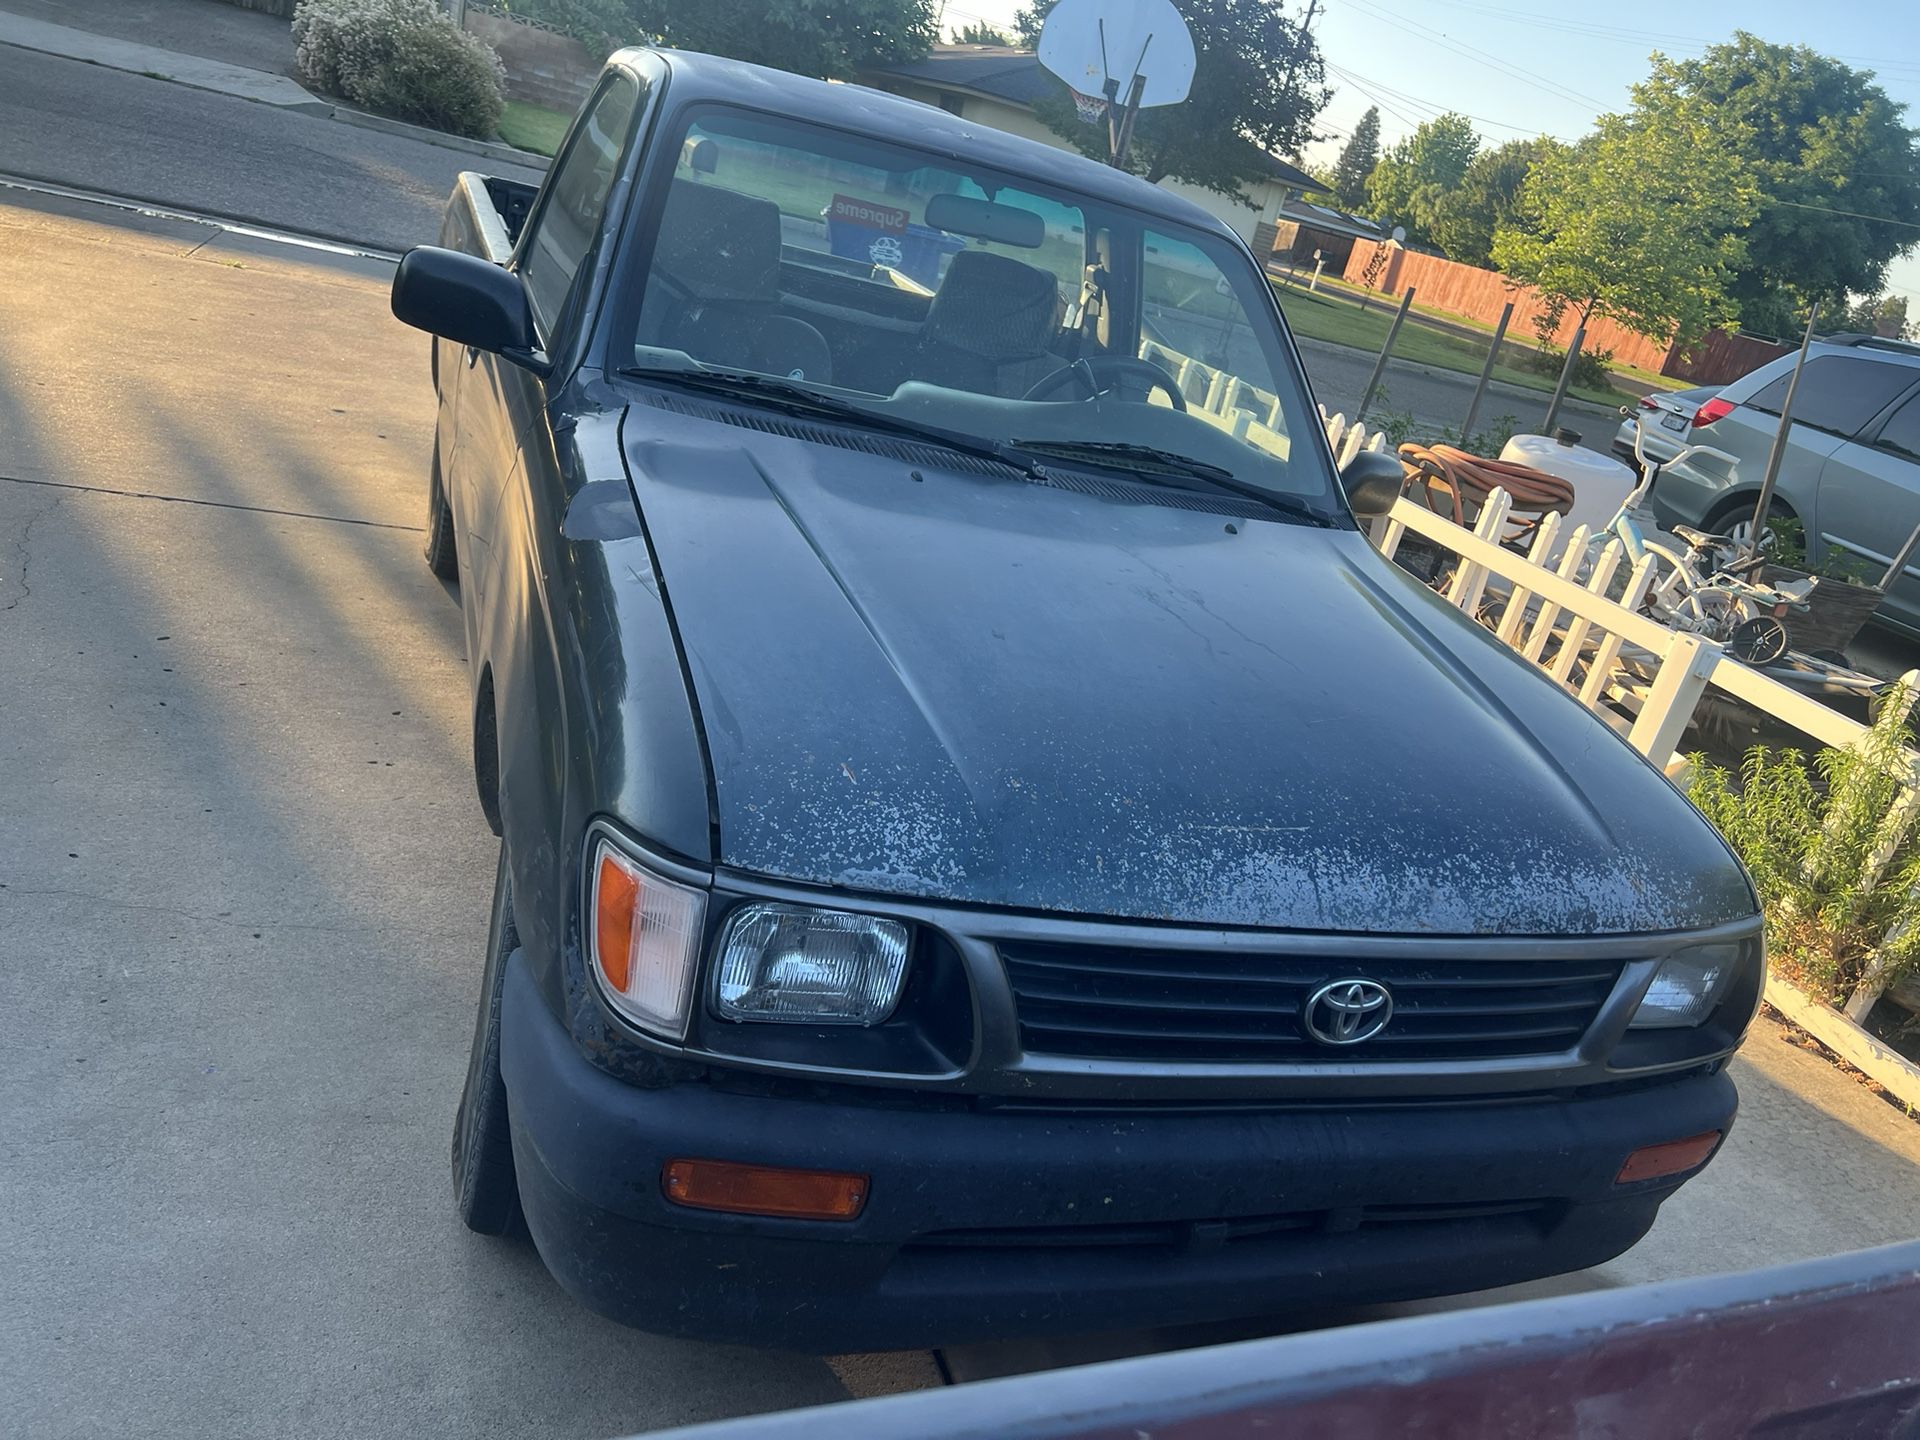 1996 Toyota Tacoma